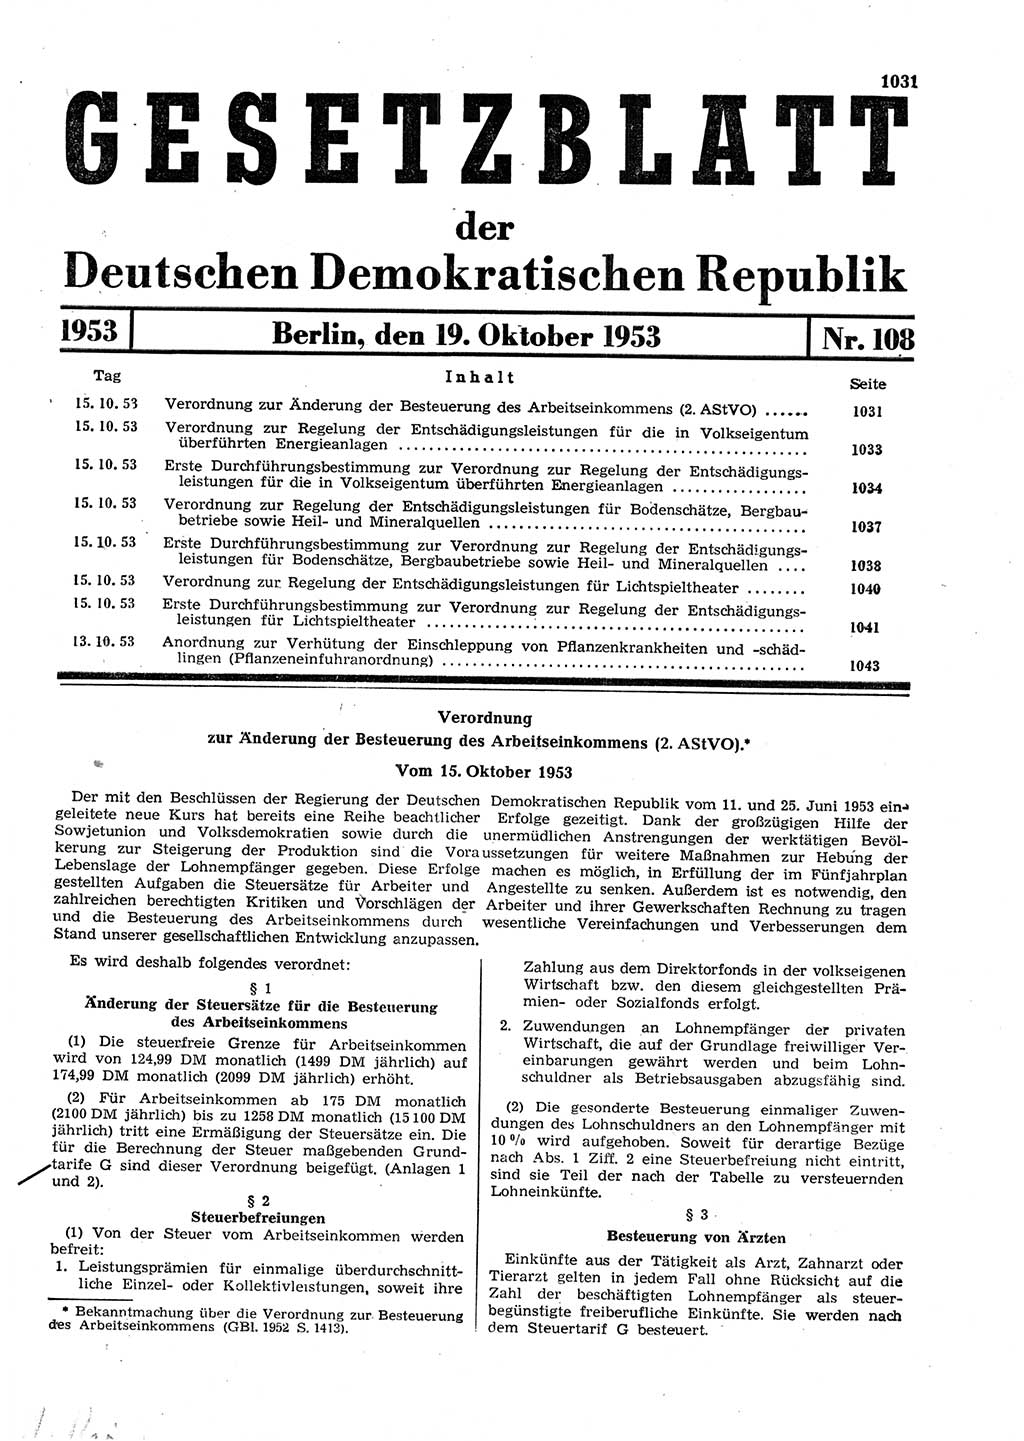 Gesetzblatt (GBl.) der Deutschen Demokratischen Republik (DDR) 1953, Seite 1031 (GBl. DDR 1953, S. 1031)